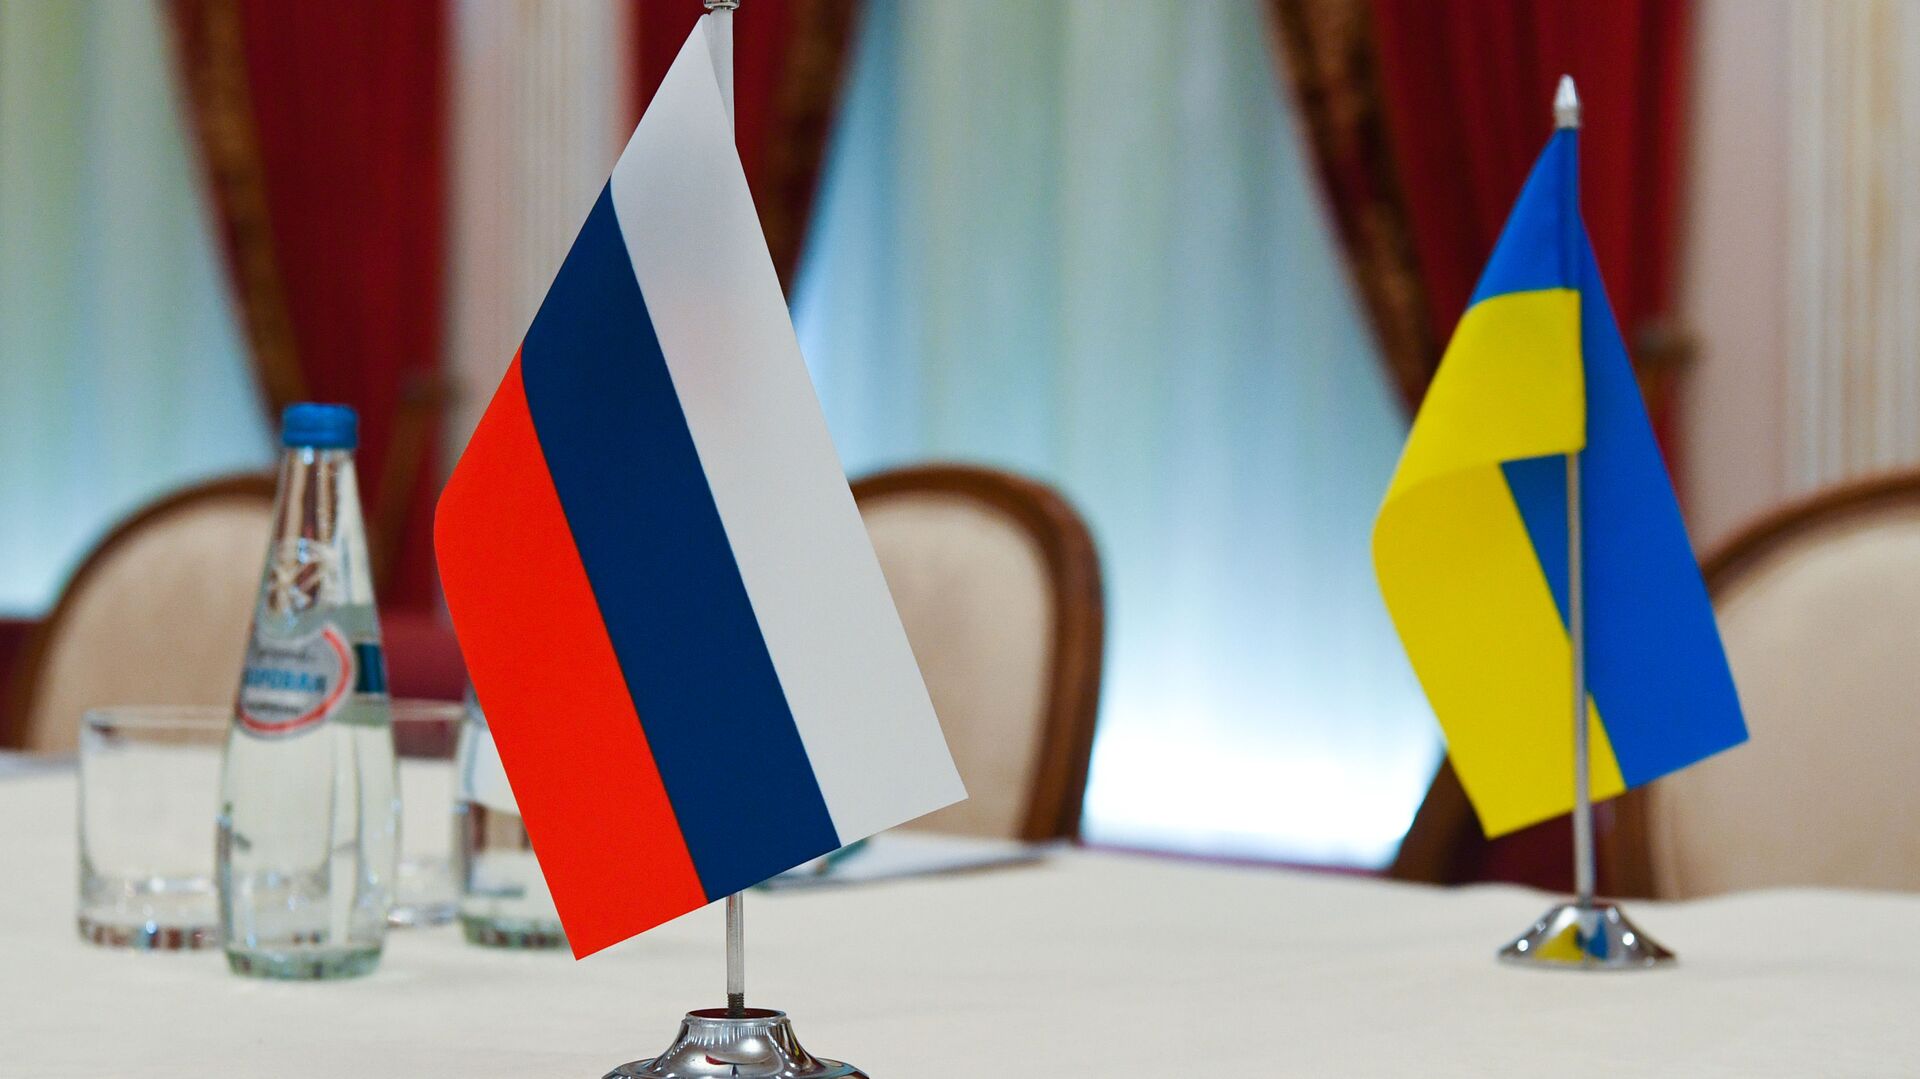 Флаги России и Украины в зале, где пройдут переговоры - Sputnik Узбекистан, 1920, 02.03.2022